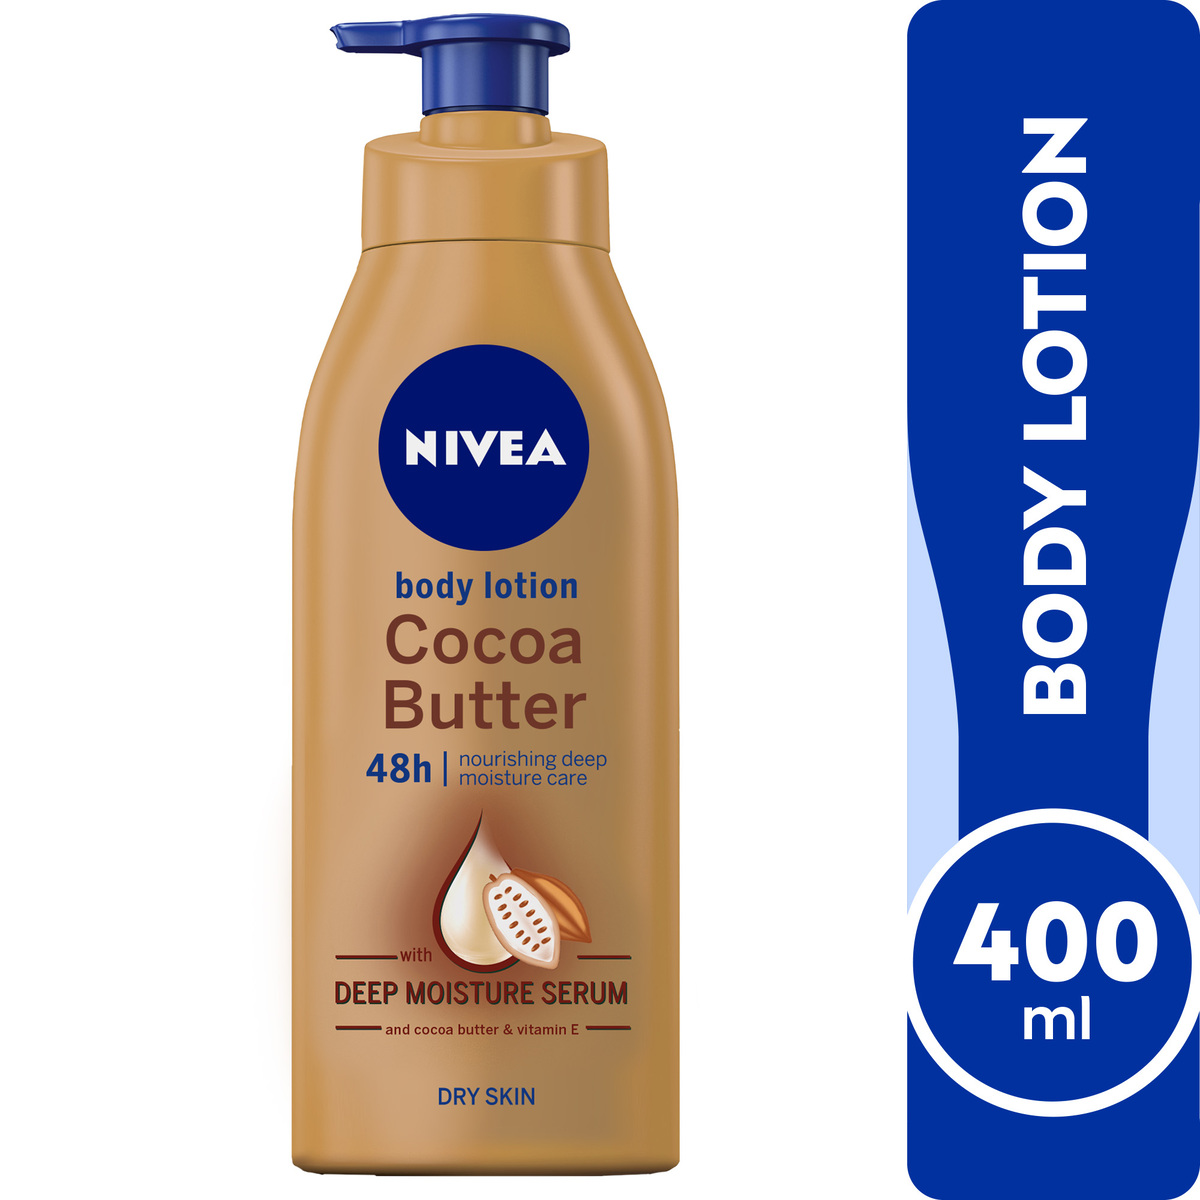 Nivea Body Lotion Cocoa Butter Vitamin E Dry Skin 400 ml